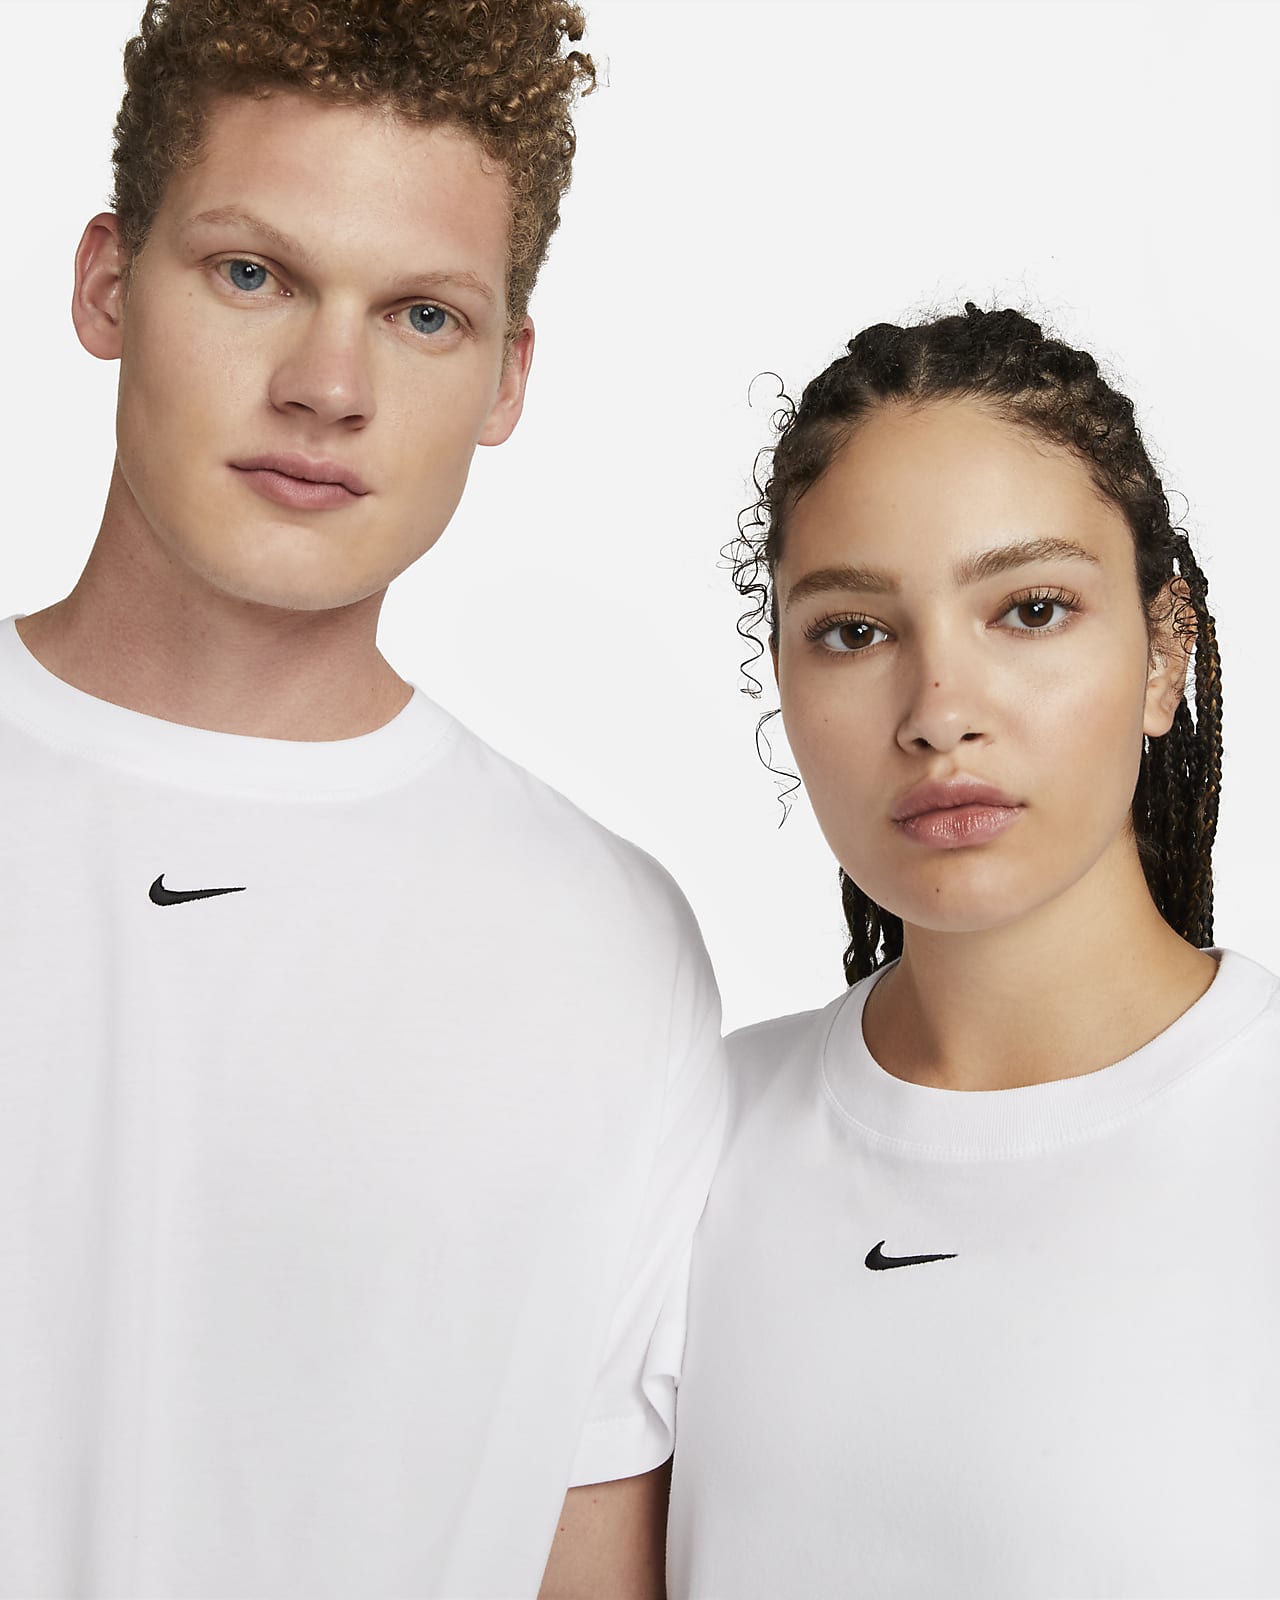 T-shirt Nike Sportswear Essential för kvinnor